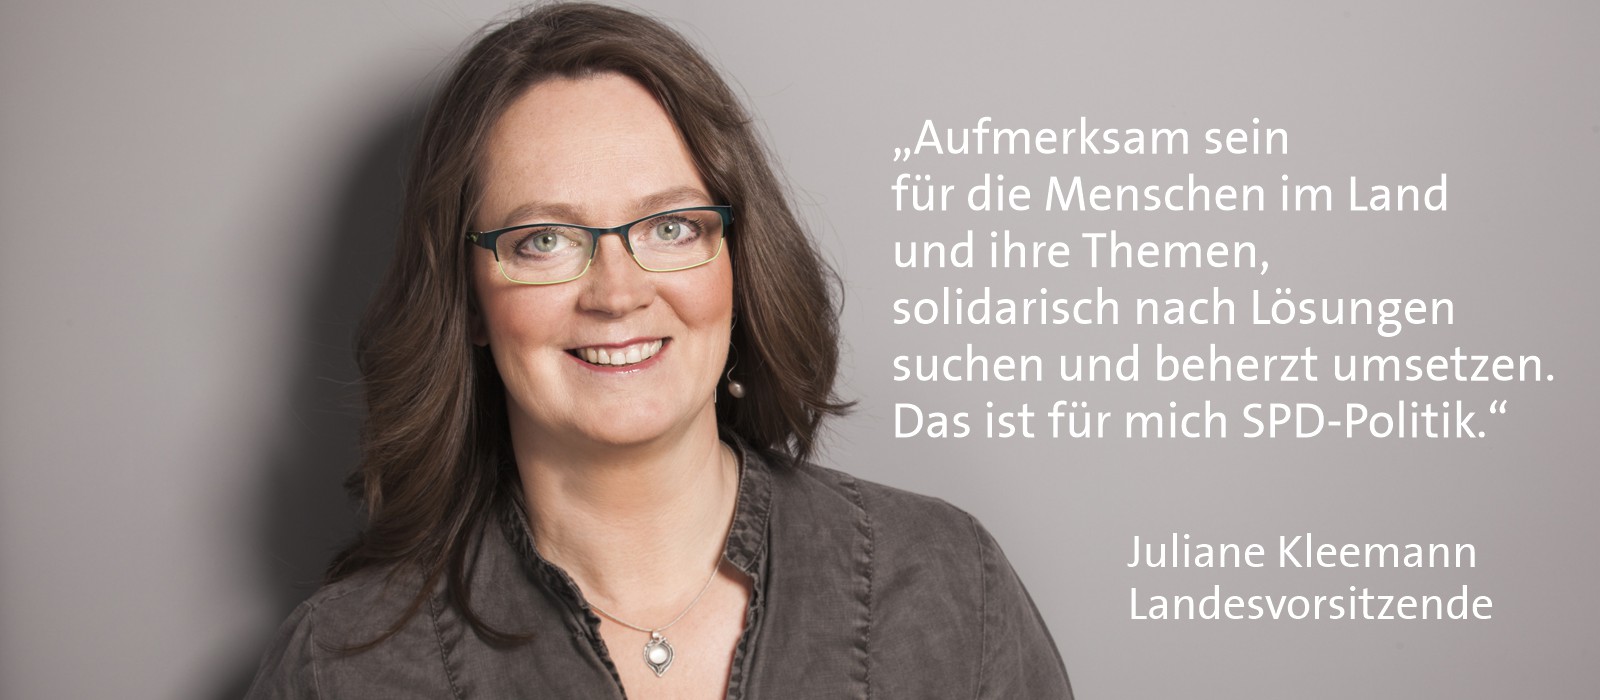 Juliane Kleemann, Landesvorsitzende - Aufmerksam sein für die Menschen im Land und ihre Themen